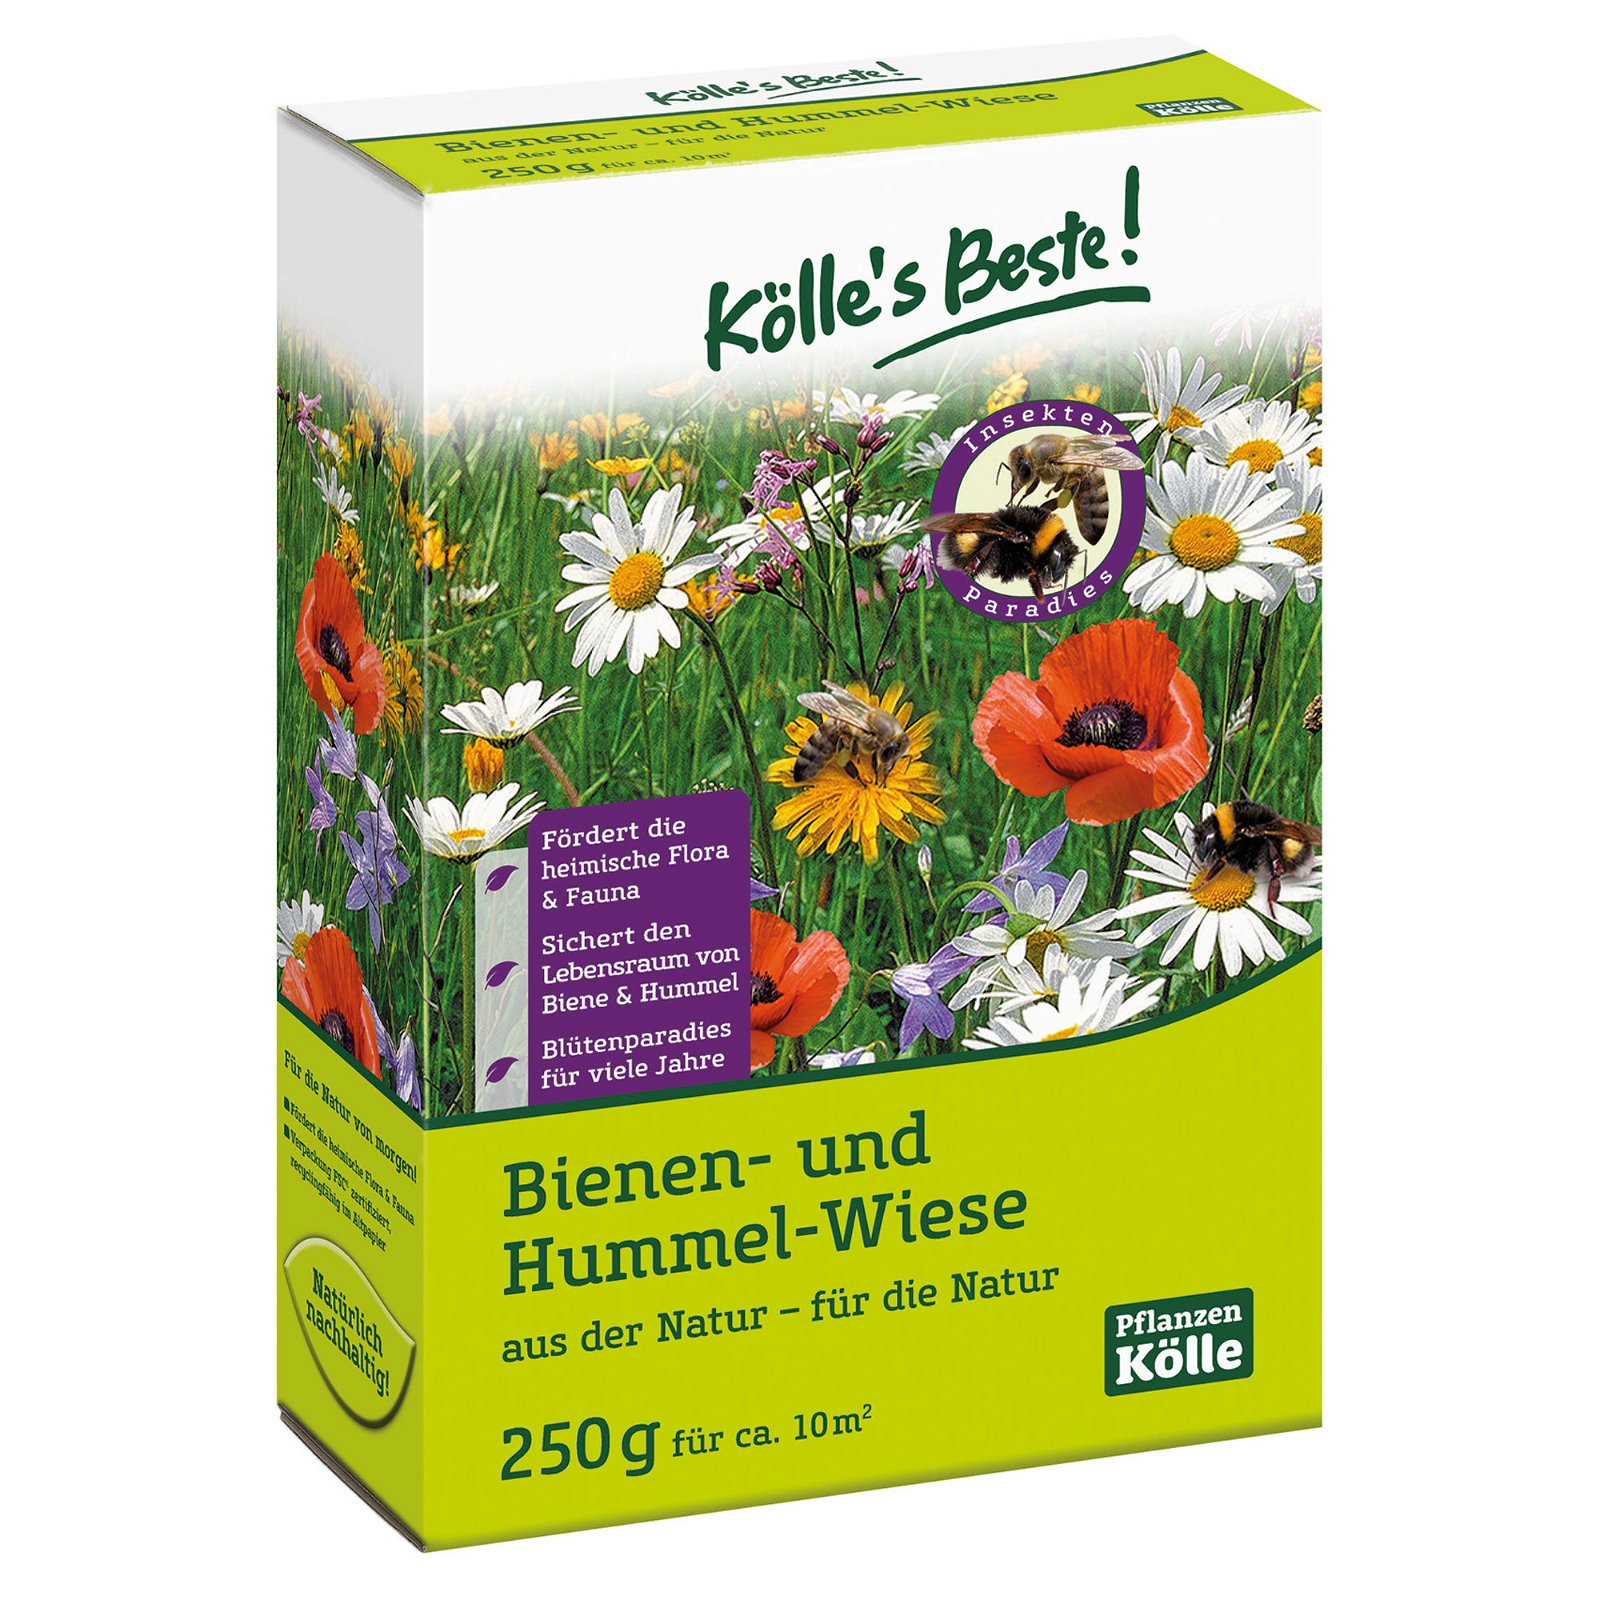 Kölle's Beste Natur Pur Bienen- und Hummel-Wiese, 250 g